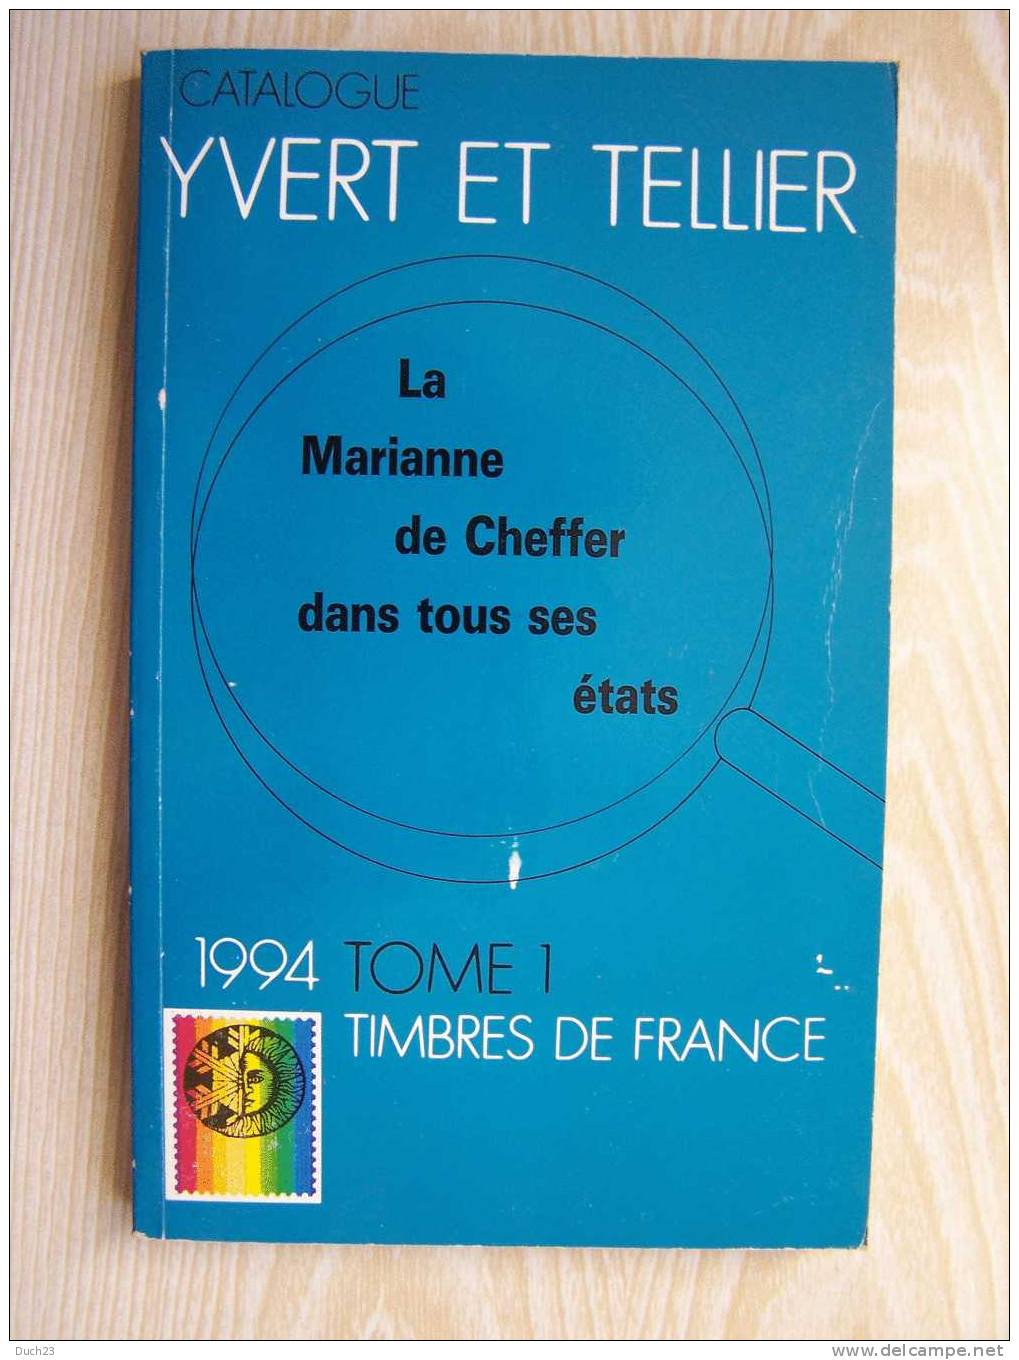 CATALOGUE DE COTATION YVERT ET TELLIER ANNEE 1994 TOME 1   TRES BON ETAT   REF CD - France